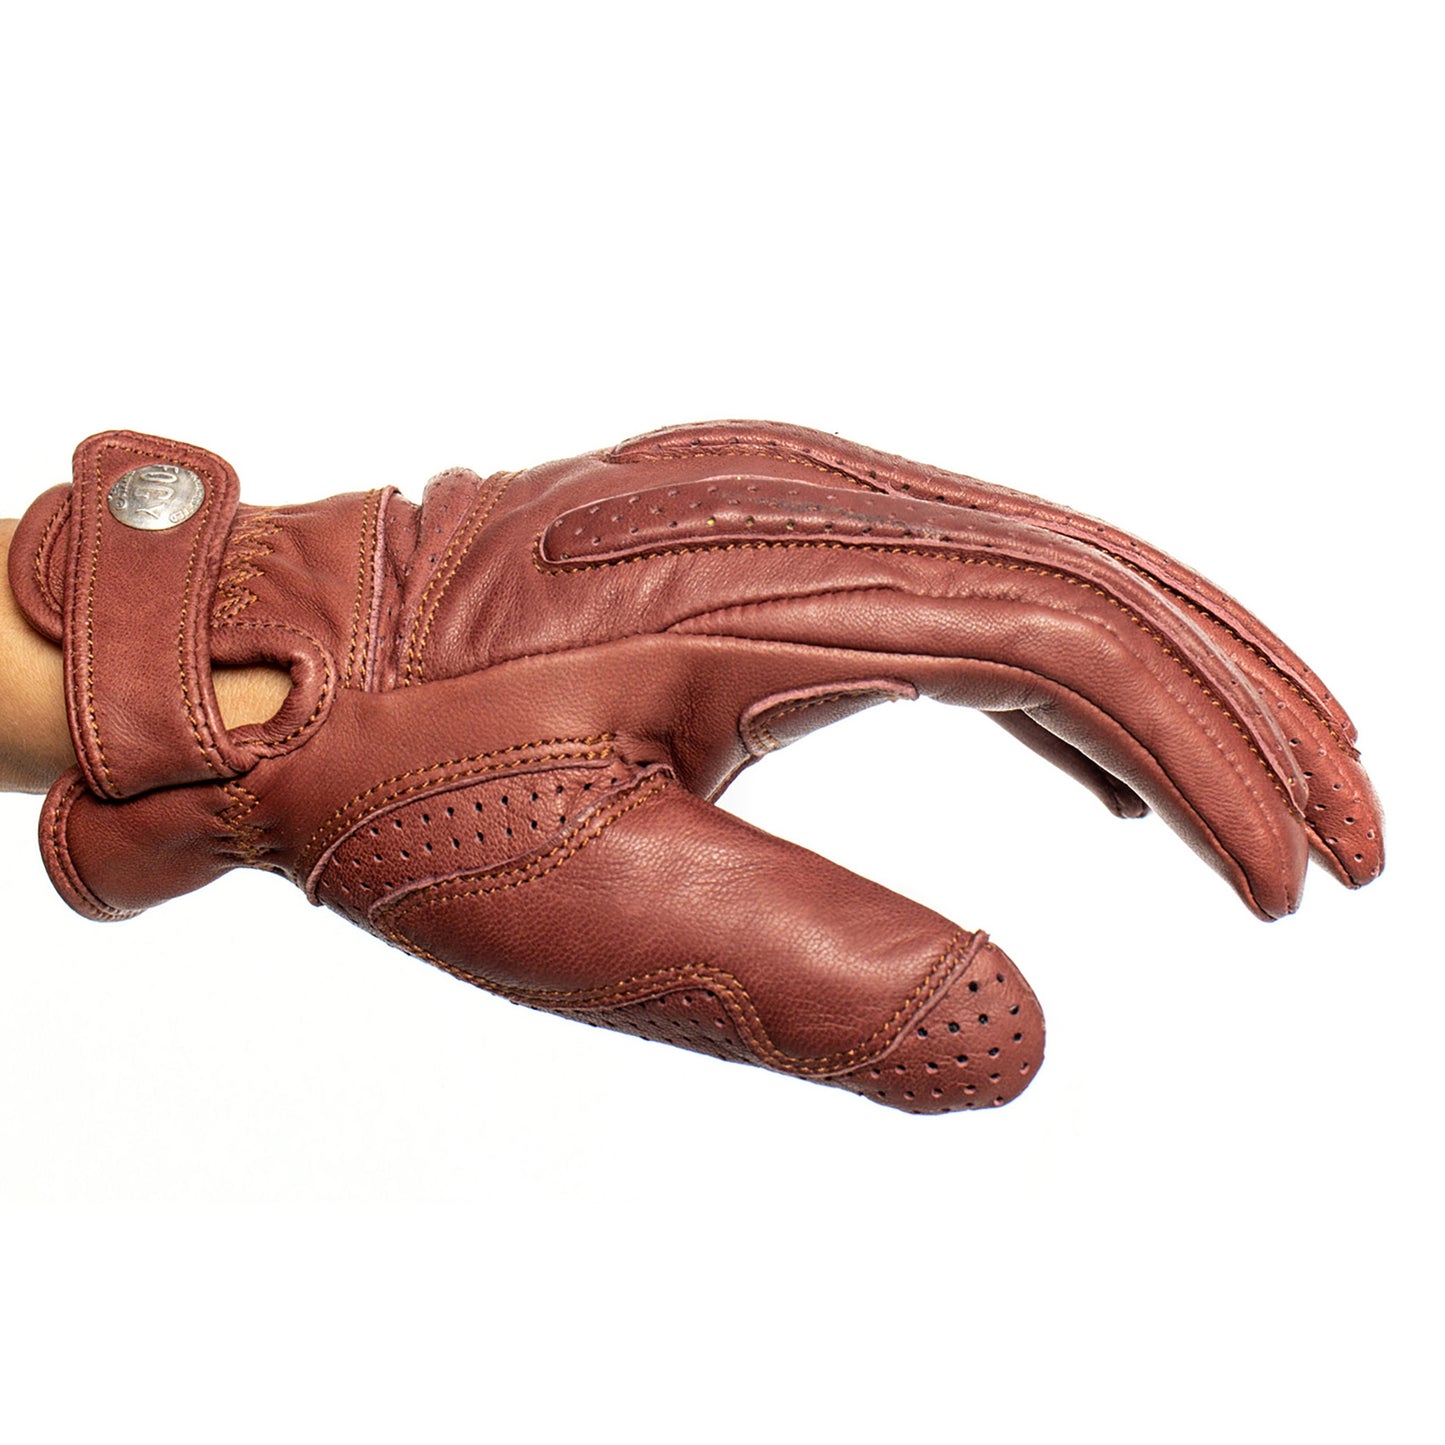 ETHIOPIA RASDASHEN Gloves - Brown